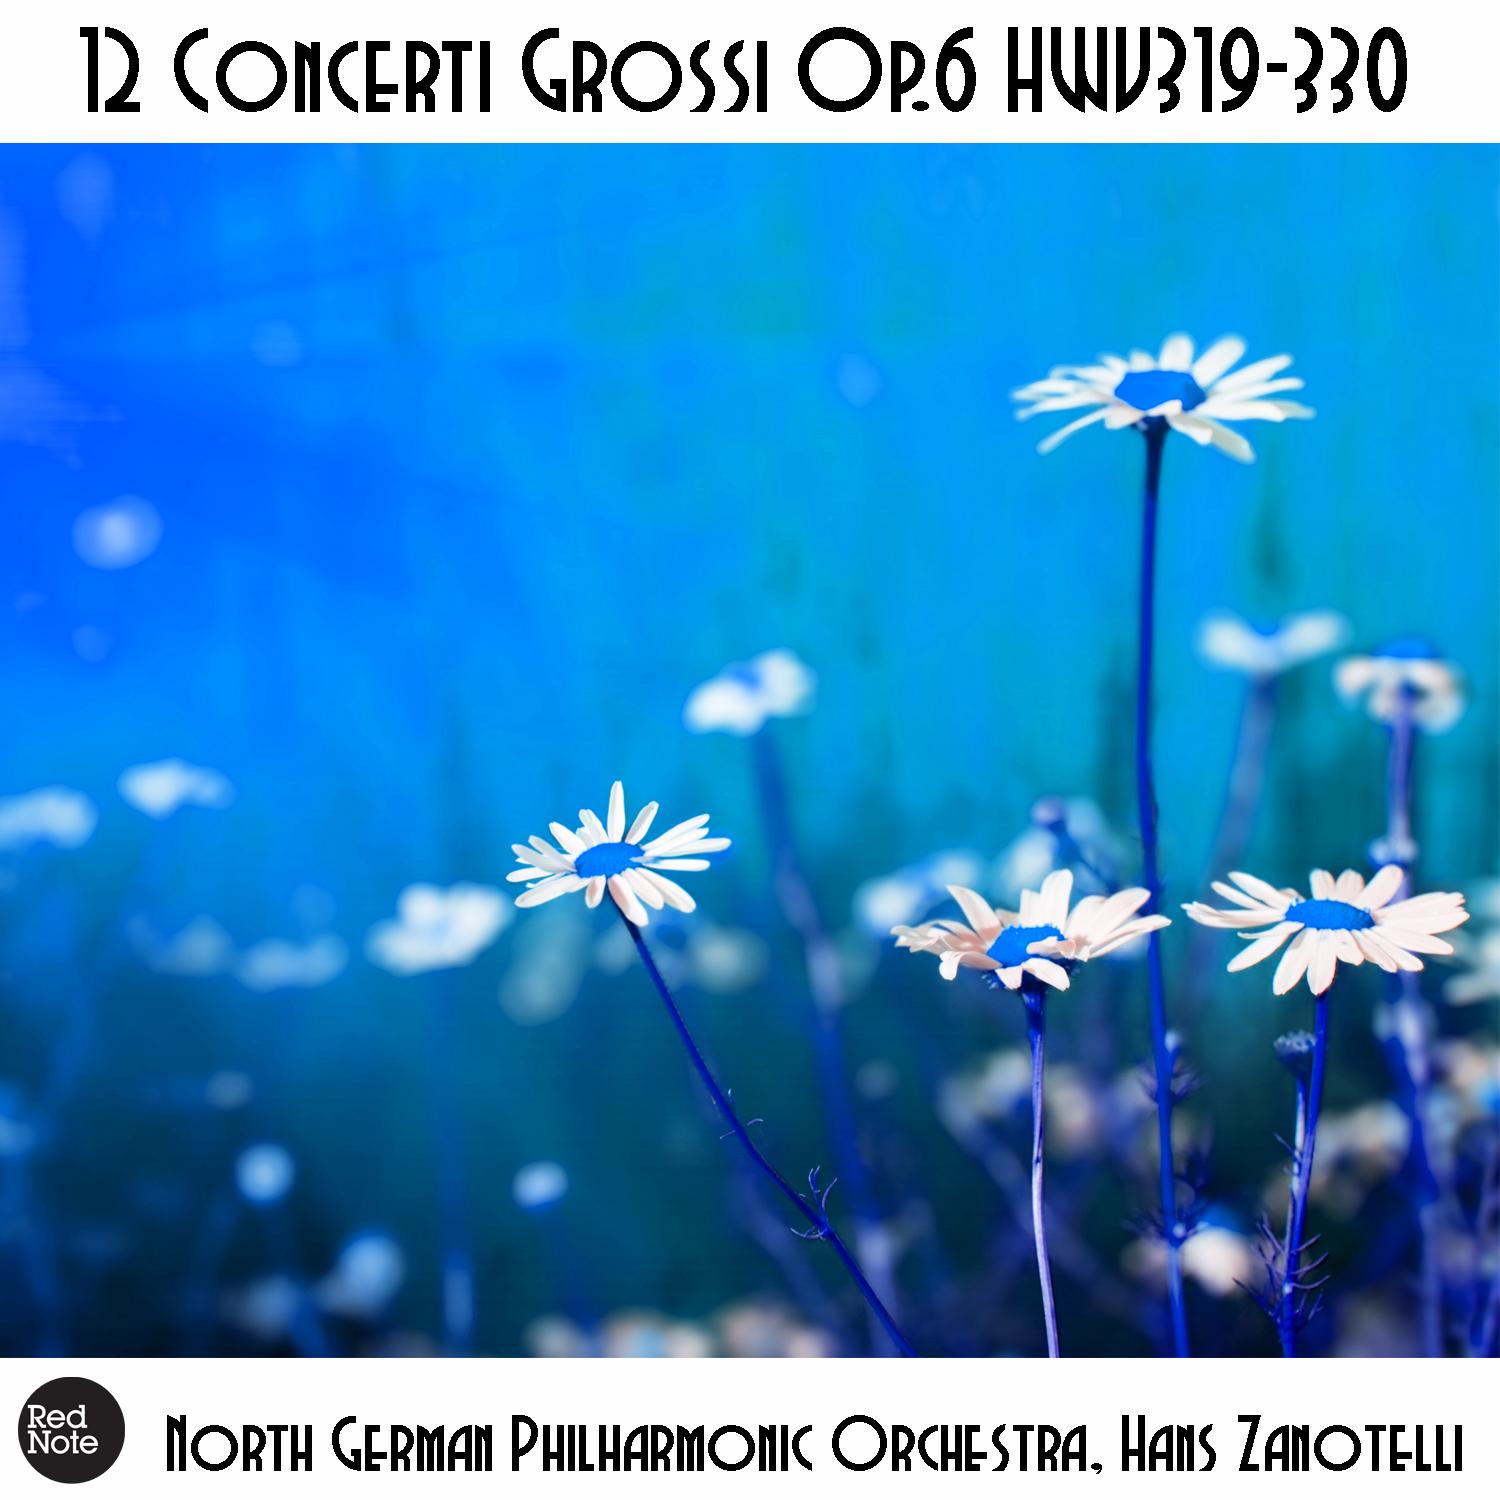 Concerti Grossi No. 5, Op. 6 HWV323: VI. Menuett